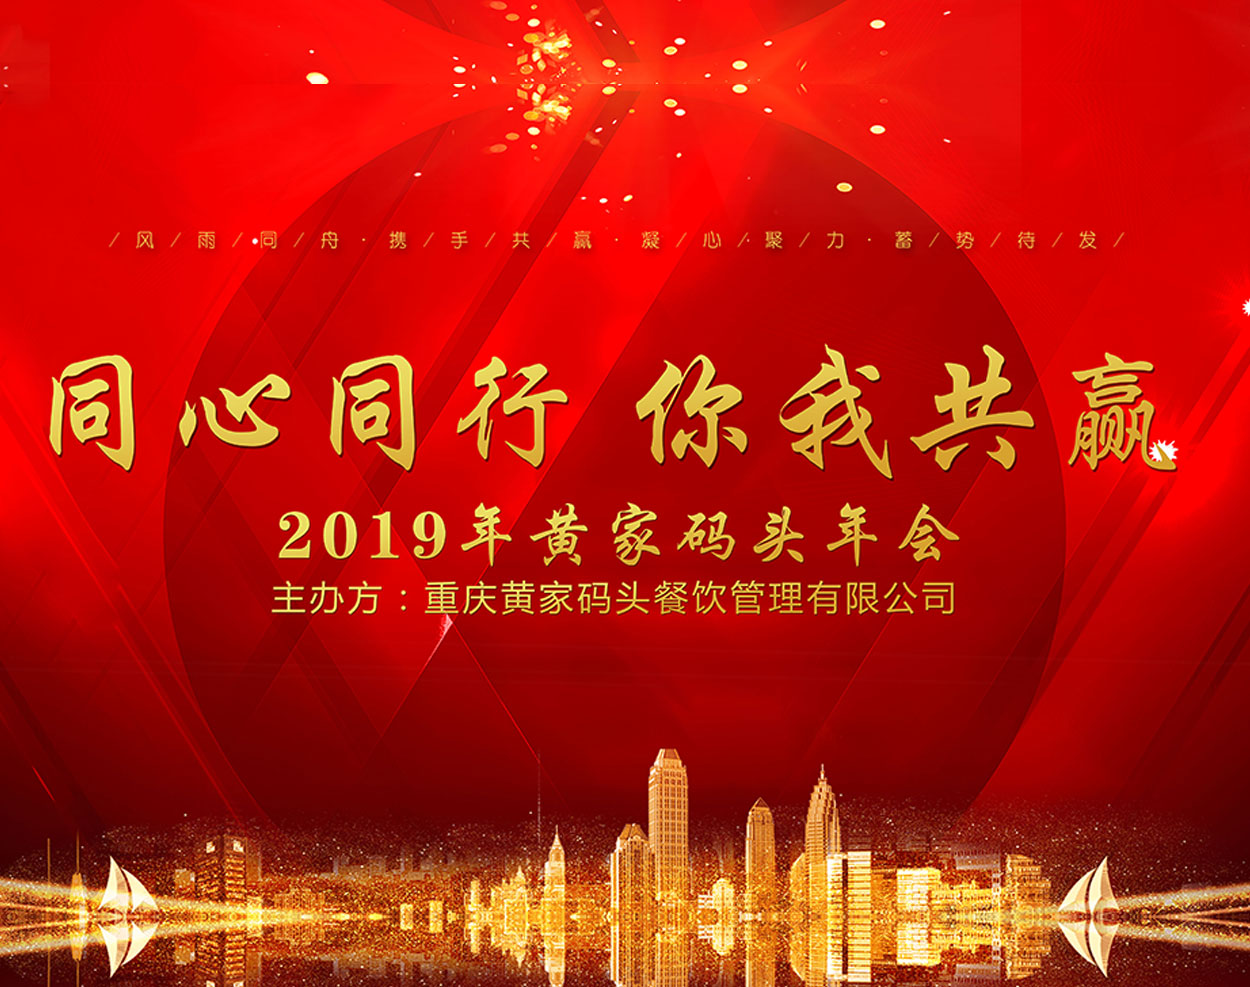 2019年度重庆黄家码头餐饮管理有限公司年会